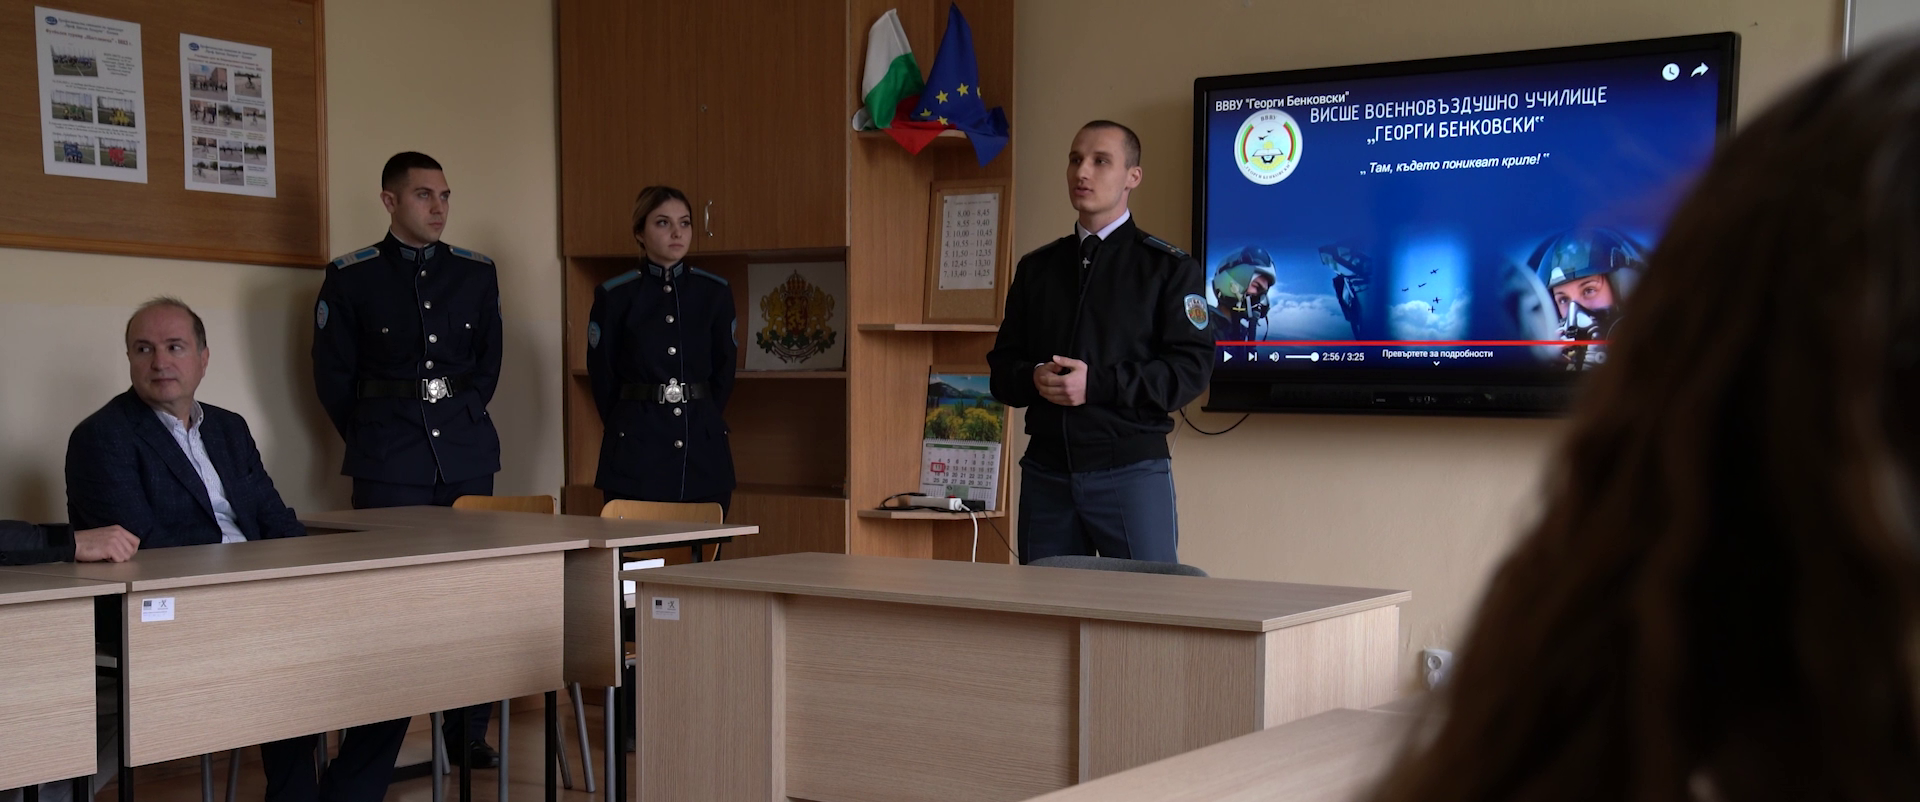 Курсанти разясниха предимствата на военната професия пред ученици в Плевен